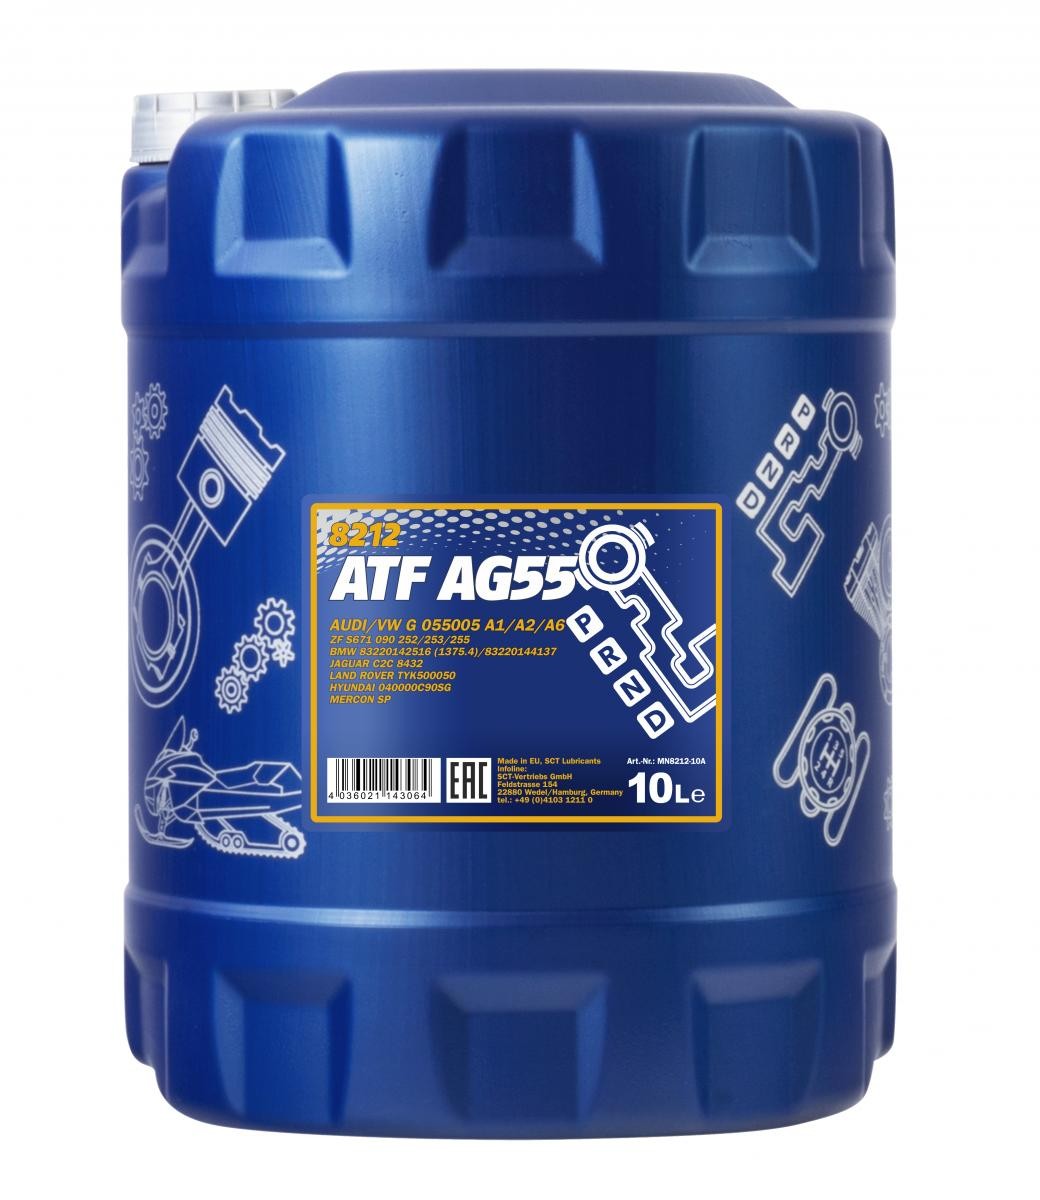 Mannol 8212 ATF AG55 Automatikgetriebeöl 10 Liter